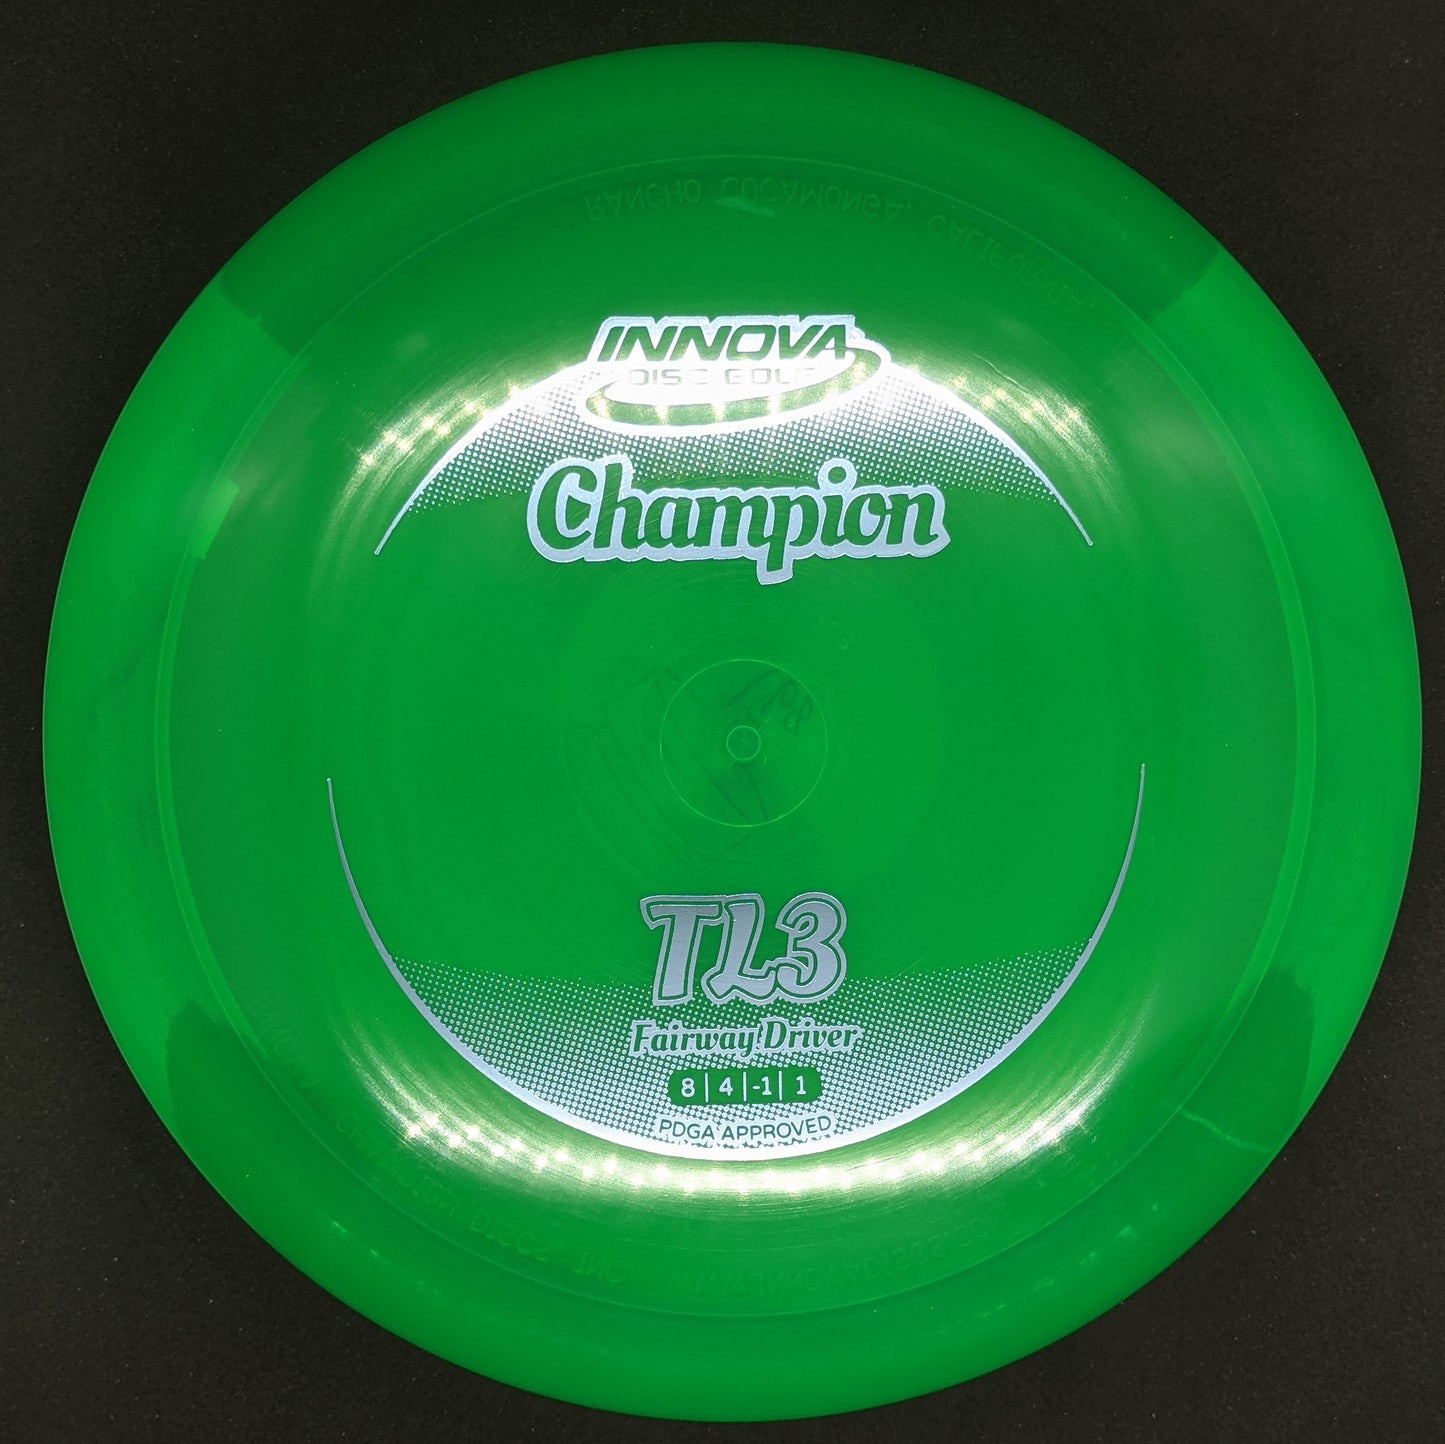 Innova - TL3 - Champion